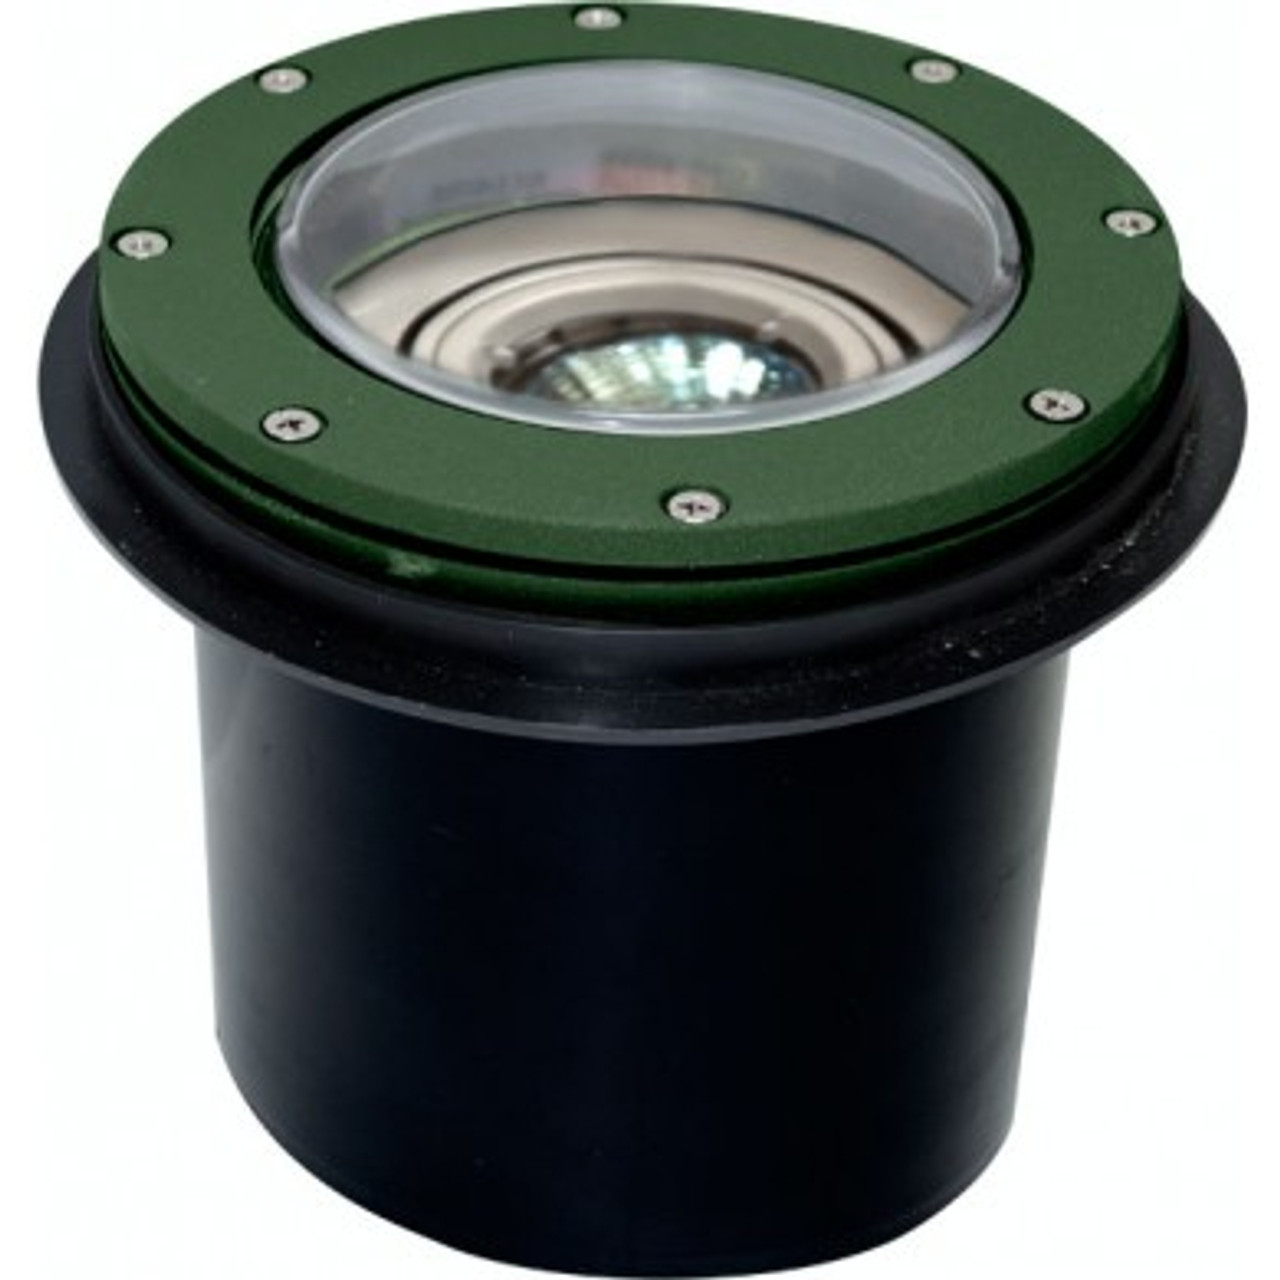 DABMAR LIGHTING LV-LED306-G-SLV Cast Aluminum LED In-Ground Well Light with PVC Sleeve, Green